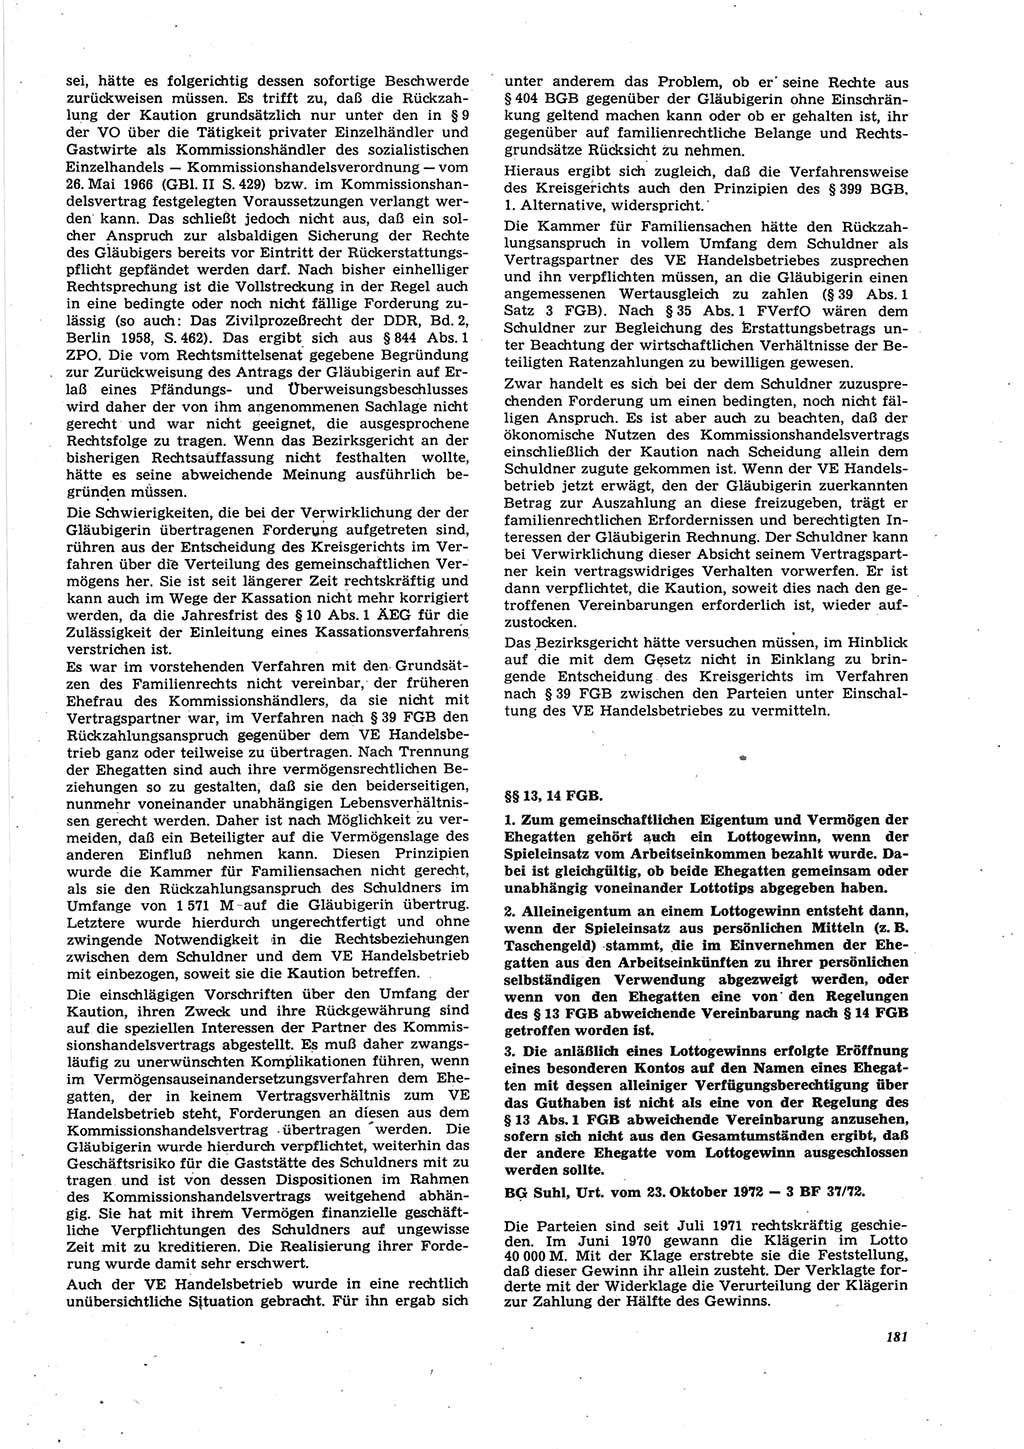 Neue Justiz (NJ), Zeitschrift für Recht und Rechtswissenschaft [Deutsche Demokratische Republik (DDR)], 27. Jahrgang 1973, Seite 181 (NJ DDR 1973, S. 181)